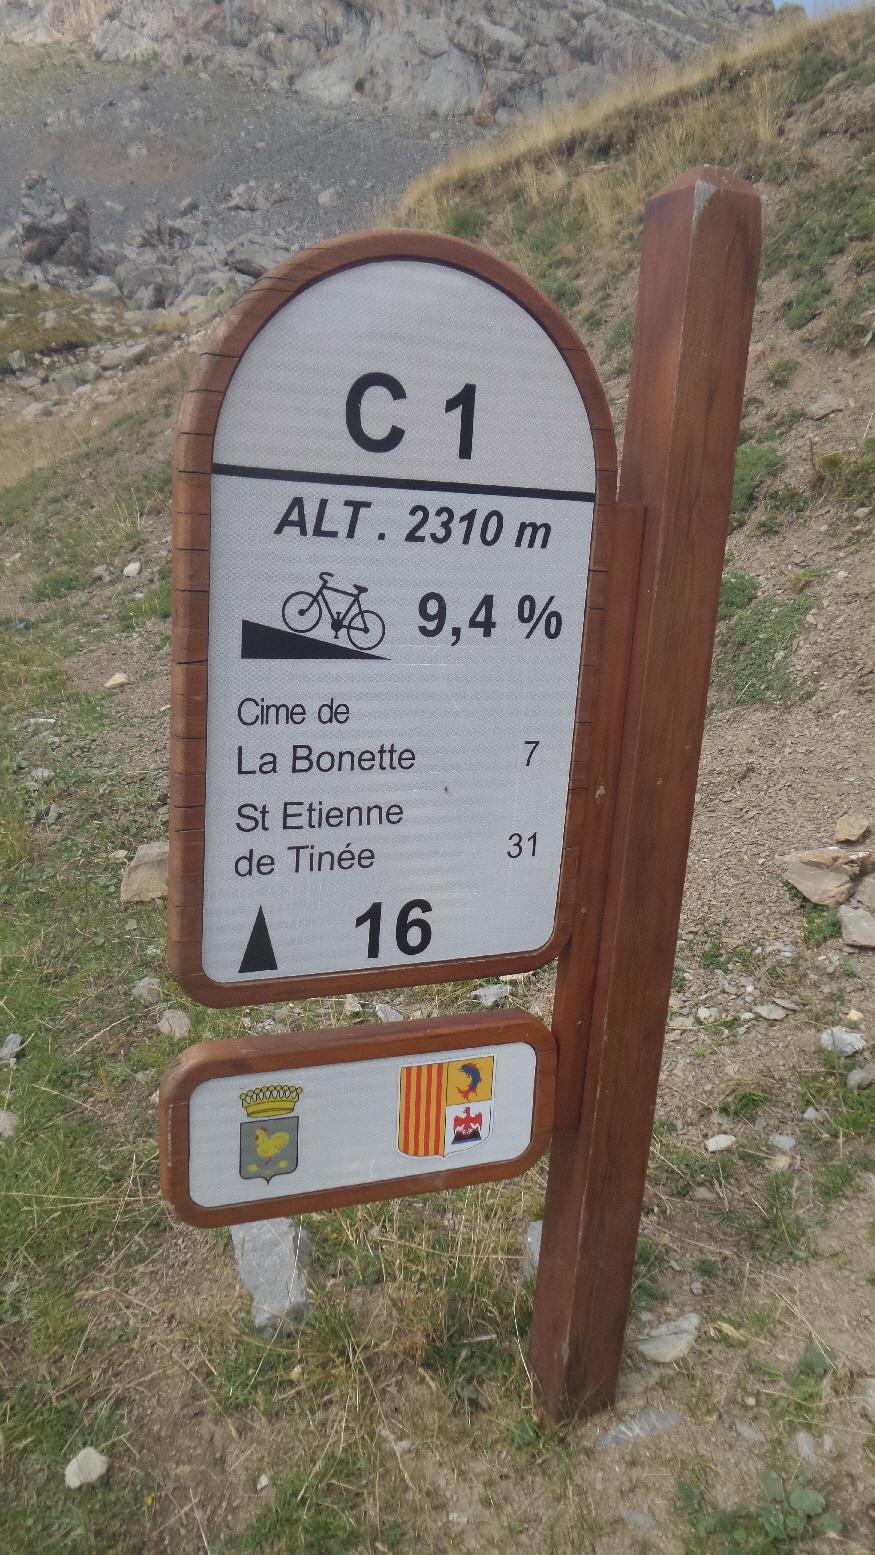 16km gefahren, noch 500 Hm / 7km zum Cime de la Bonette . Durchschnittliche Steigung auf dem folgenden Kilometer 9,4%